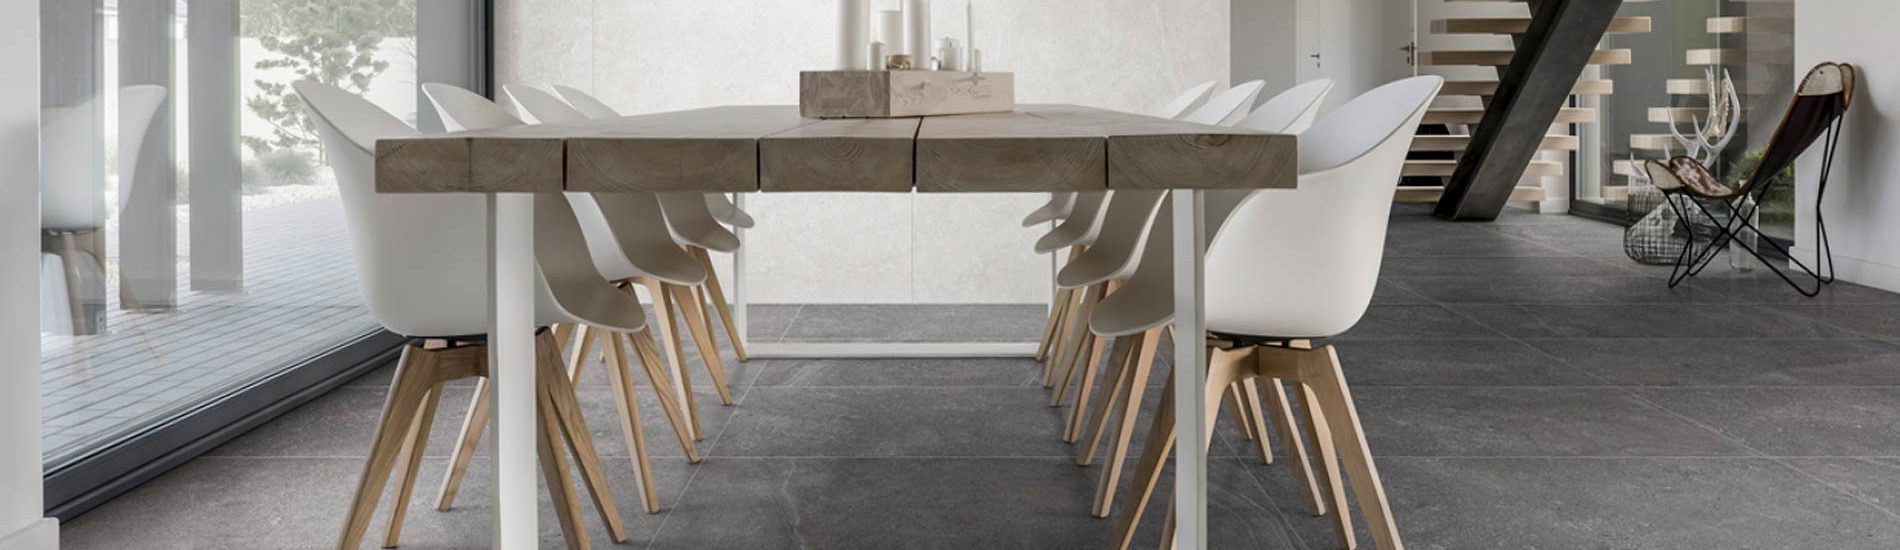 banner-trust-italian-contemporary-stone-look-floor-wall-tile-abitare-la-ceramica-orange-county